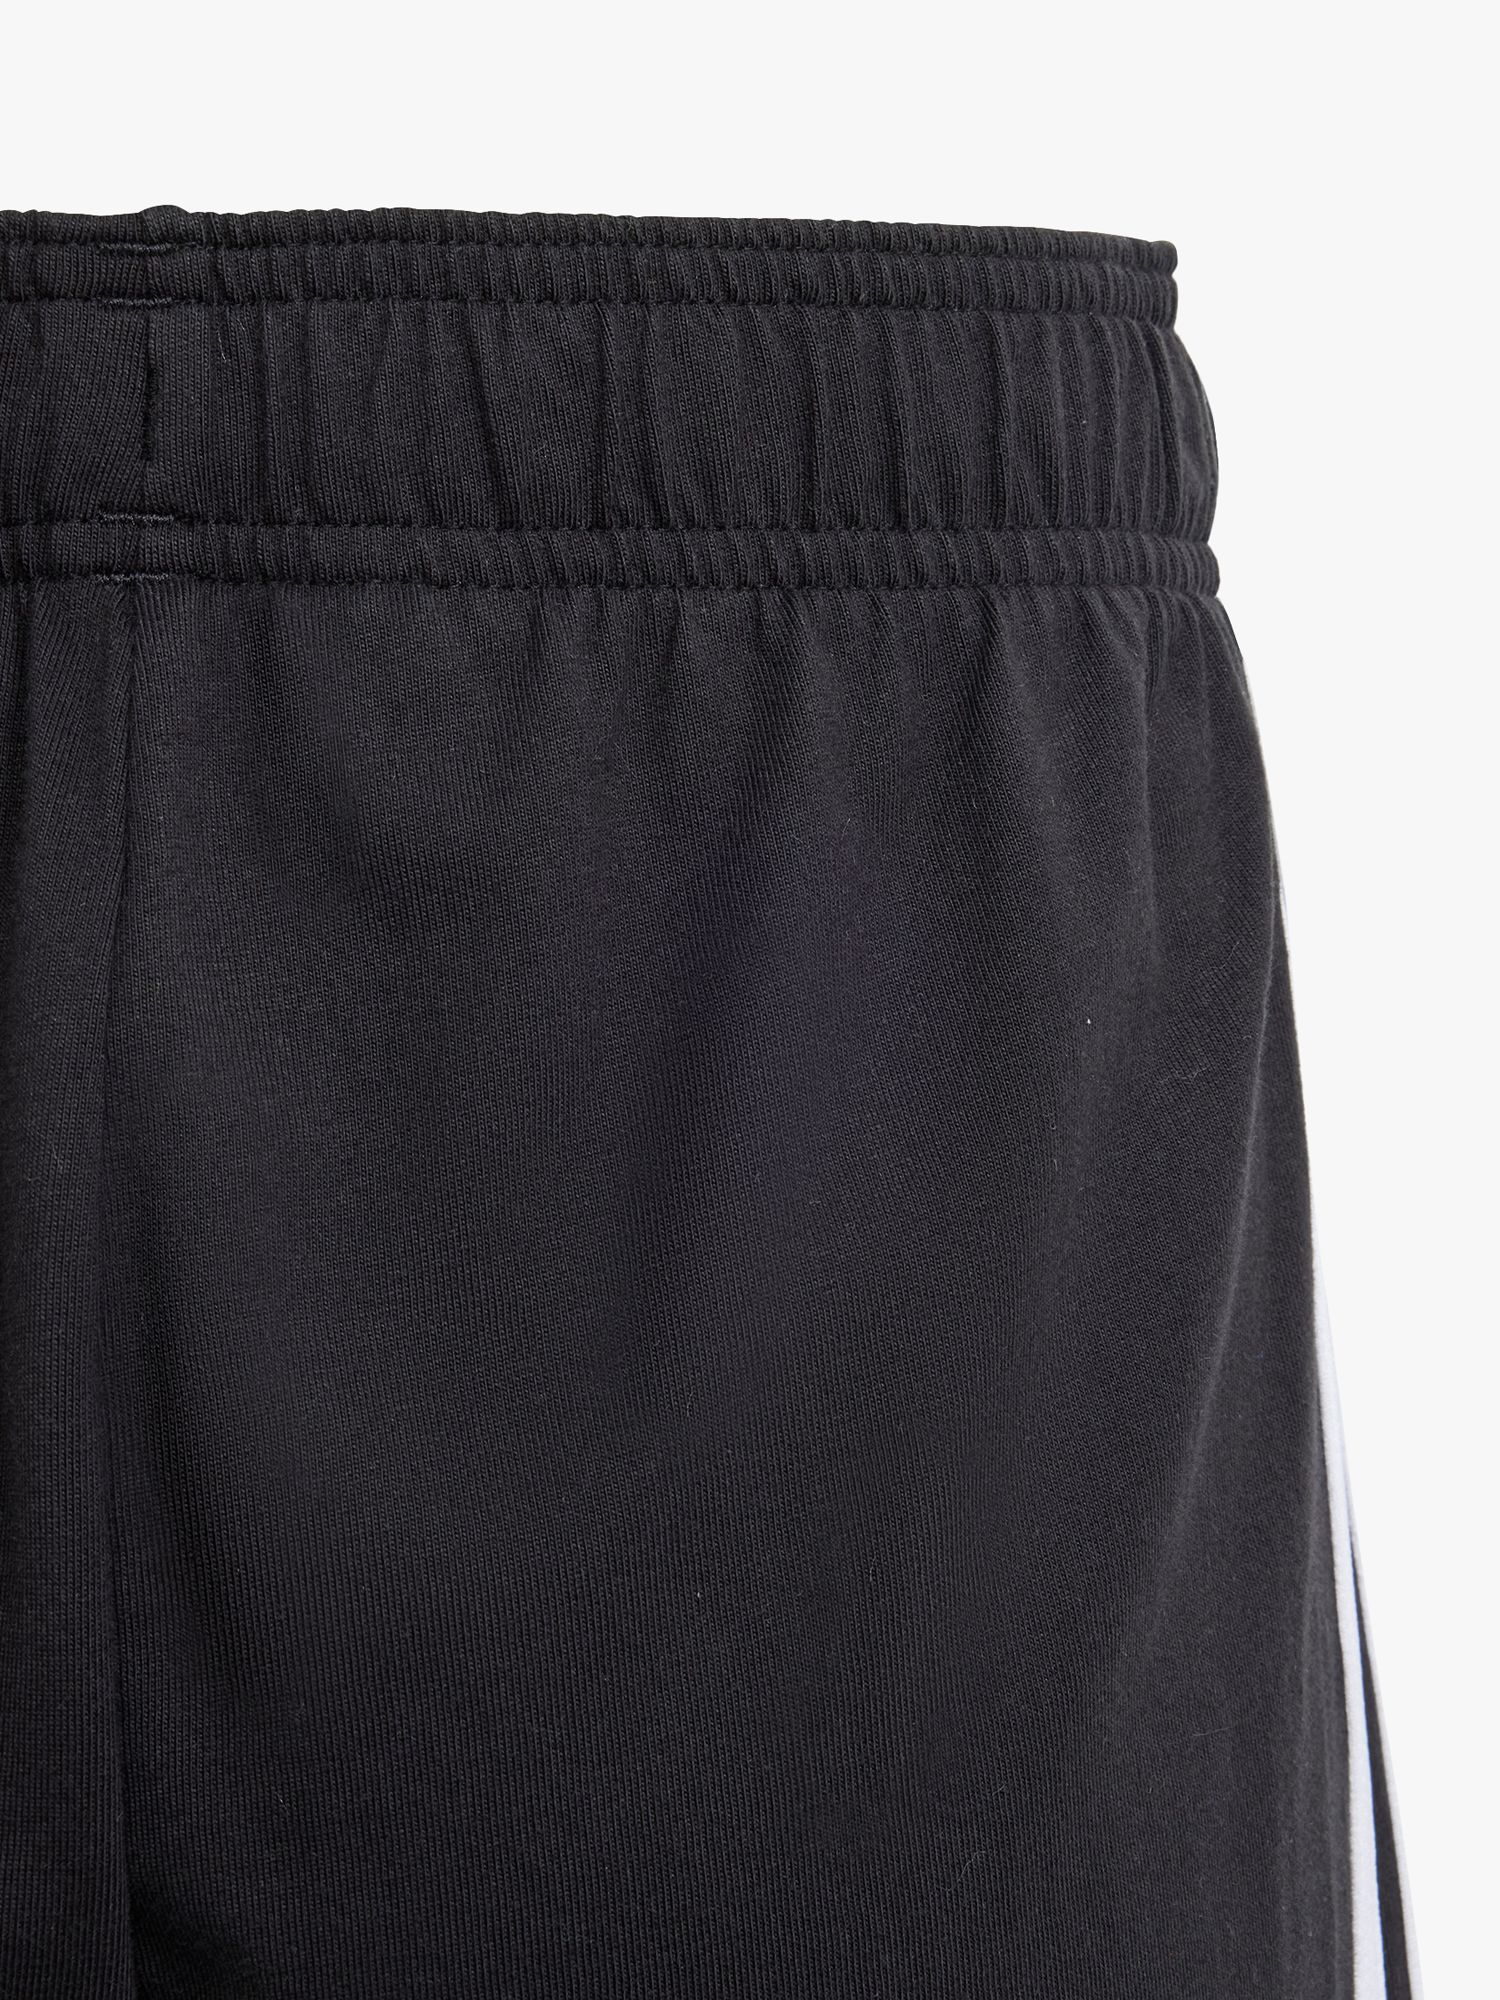 Buy adidas Kids' Stripe Cotton Shorts, Black Online at johnlewis.com